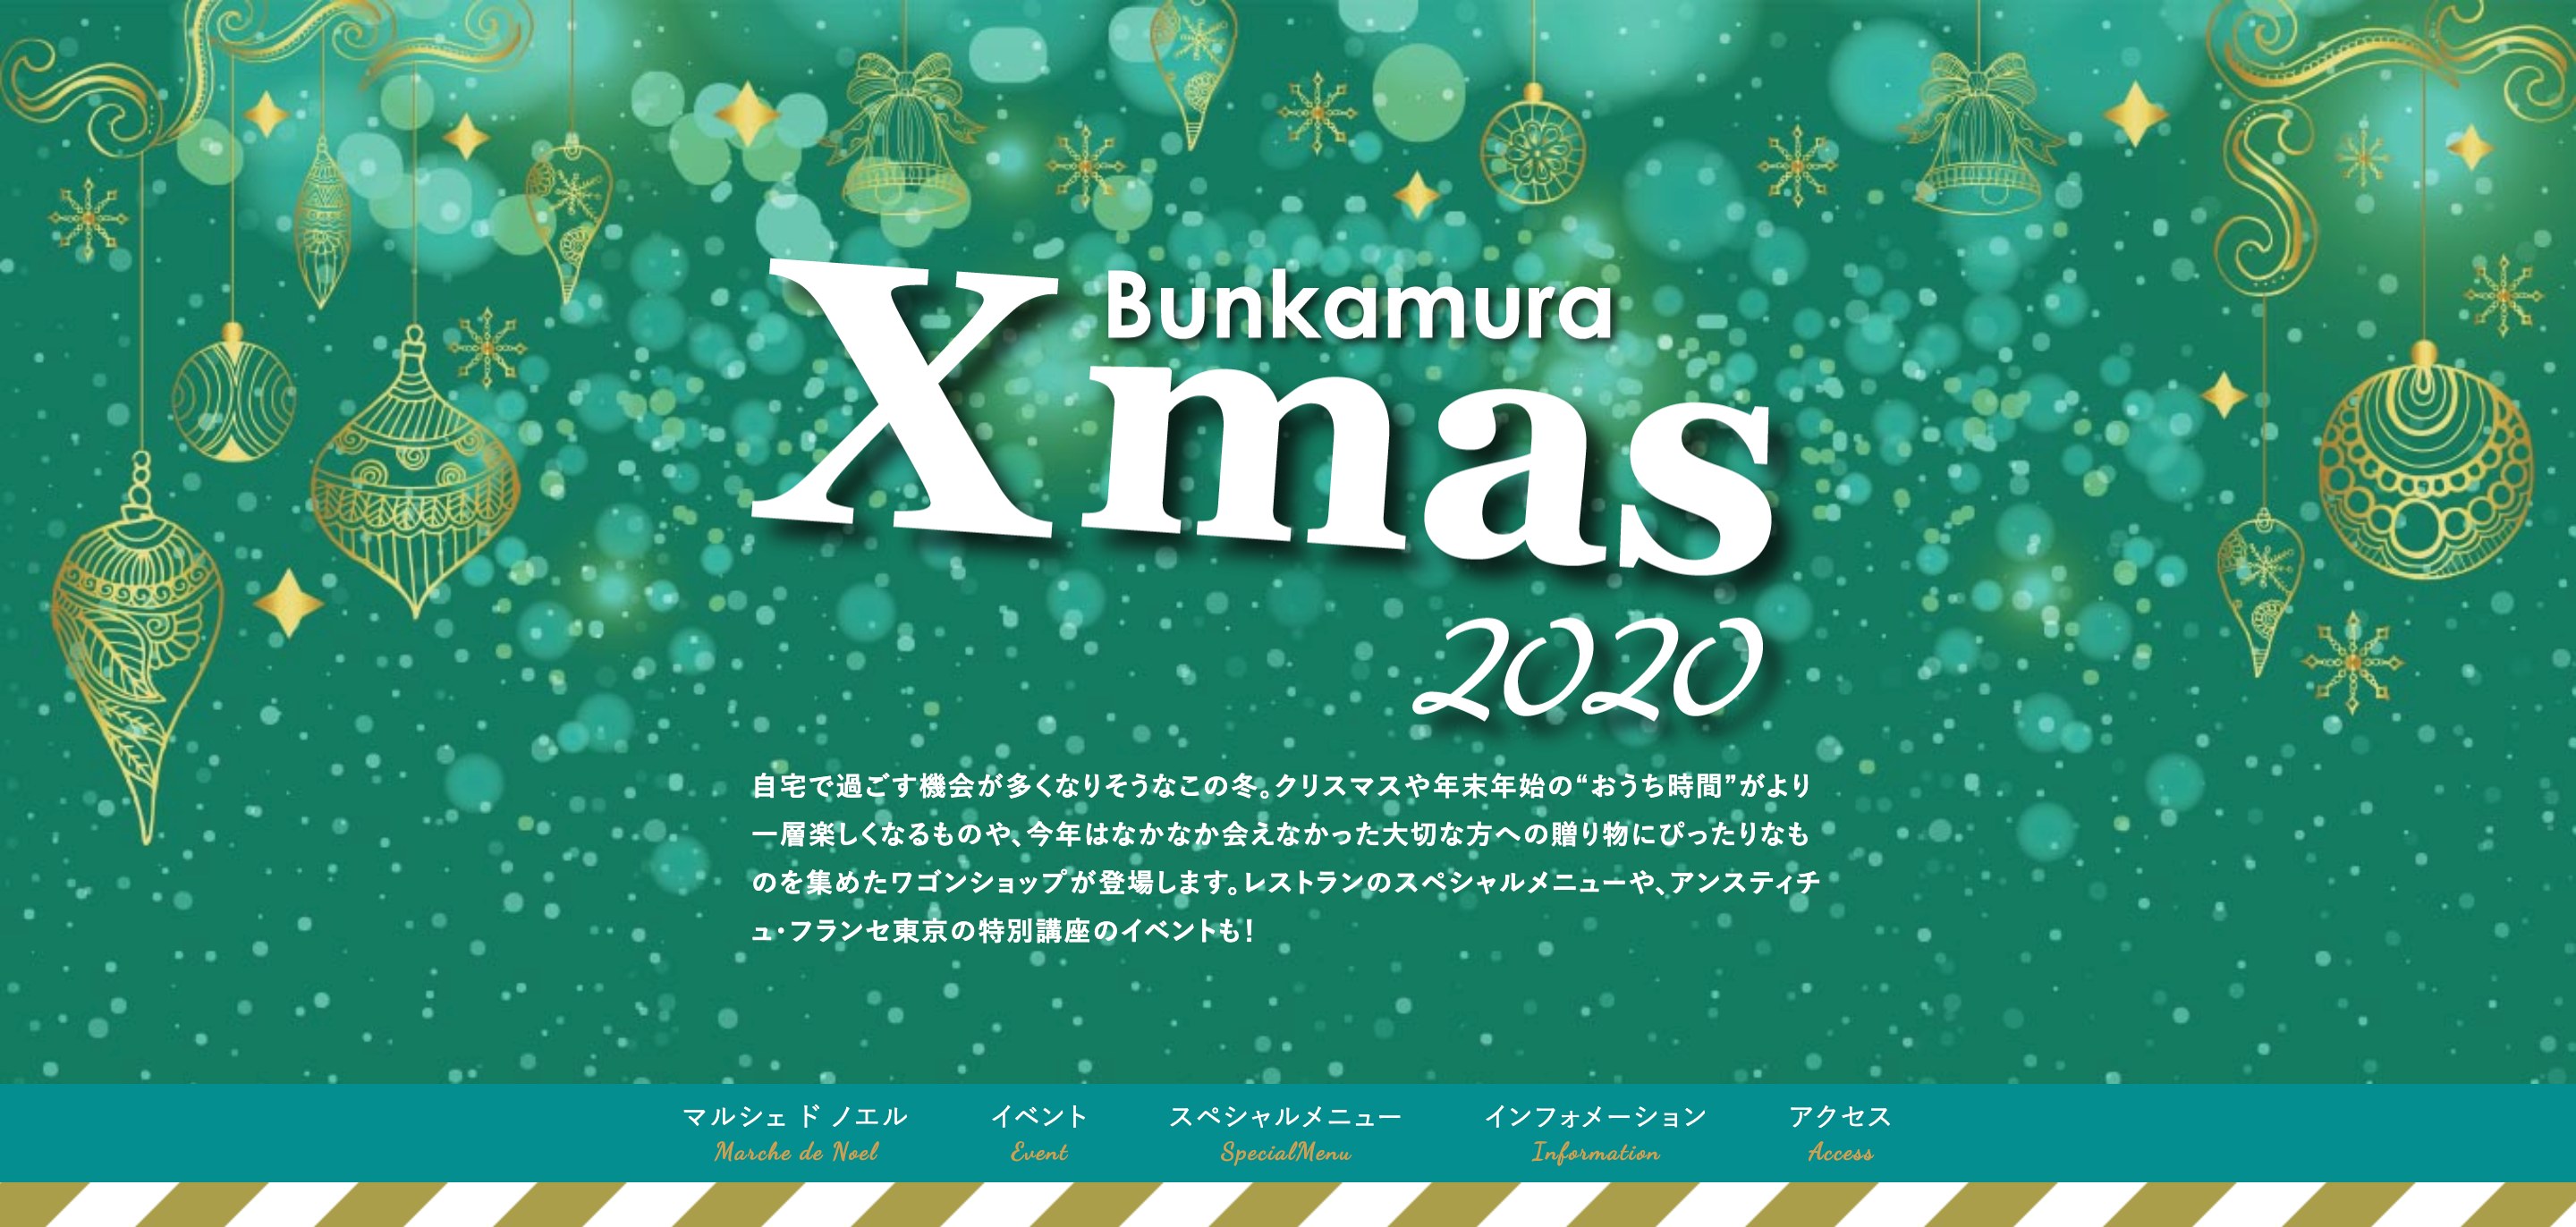 Bunkamura Xmas 2020